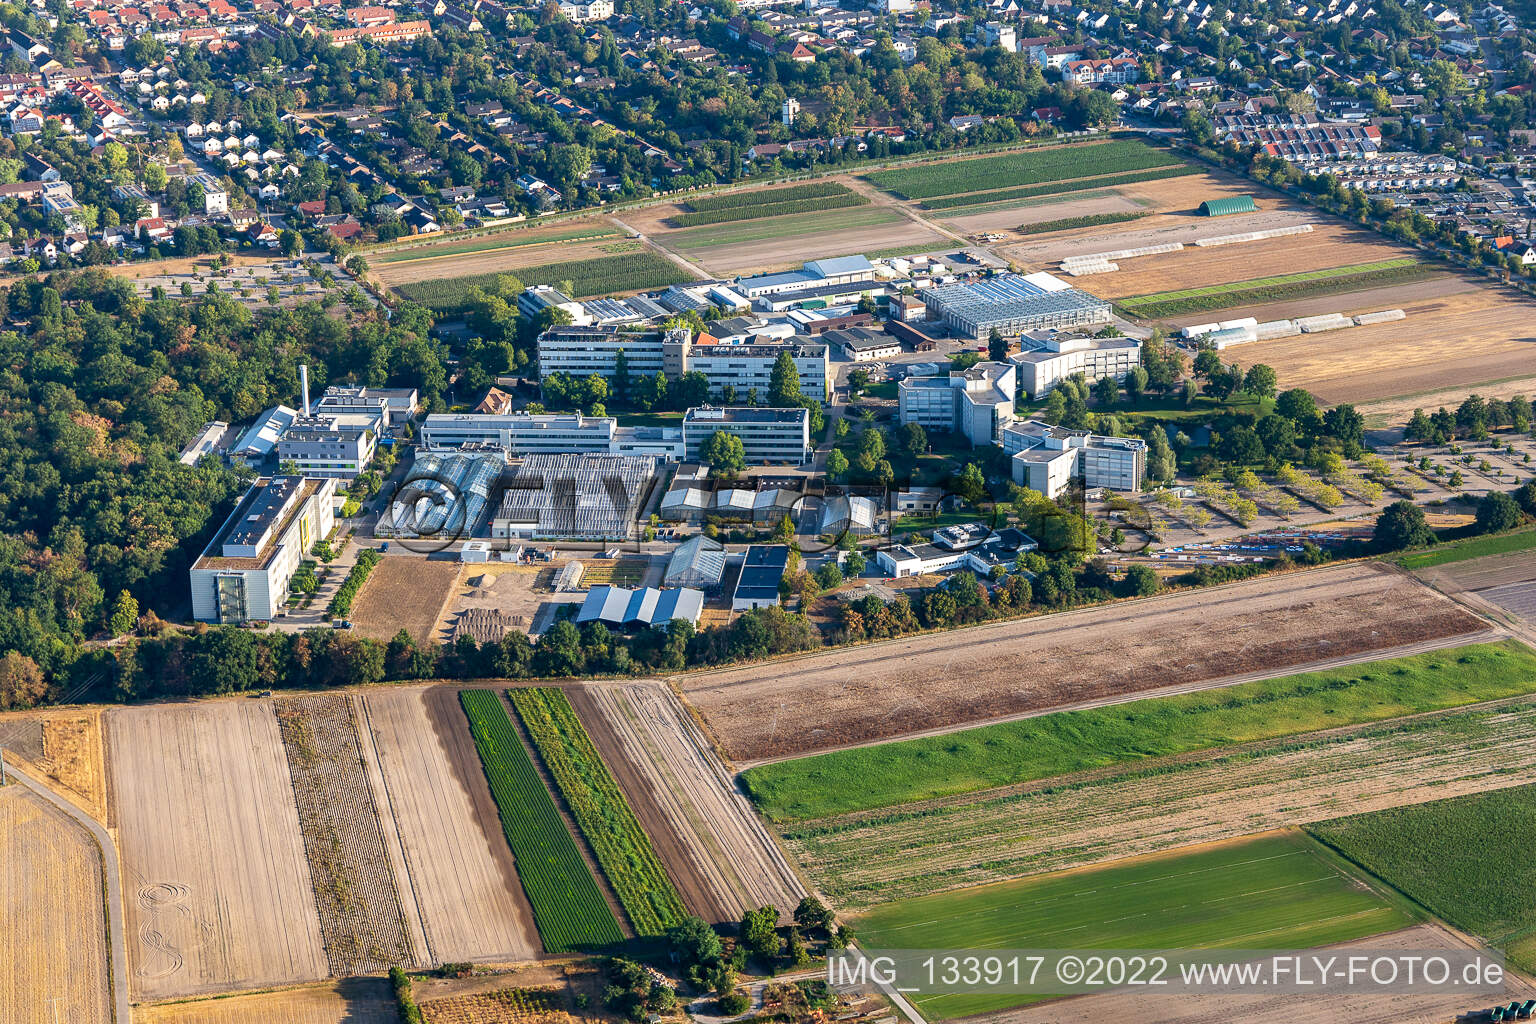 Vue aérienne de Centre agricole BASF à Limburgerhof dans le département Rhénanie-Palatinat, Allemagne